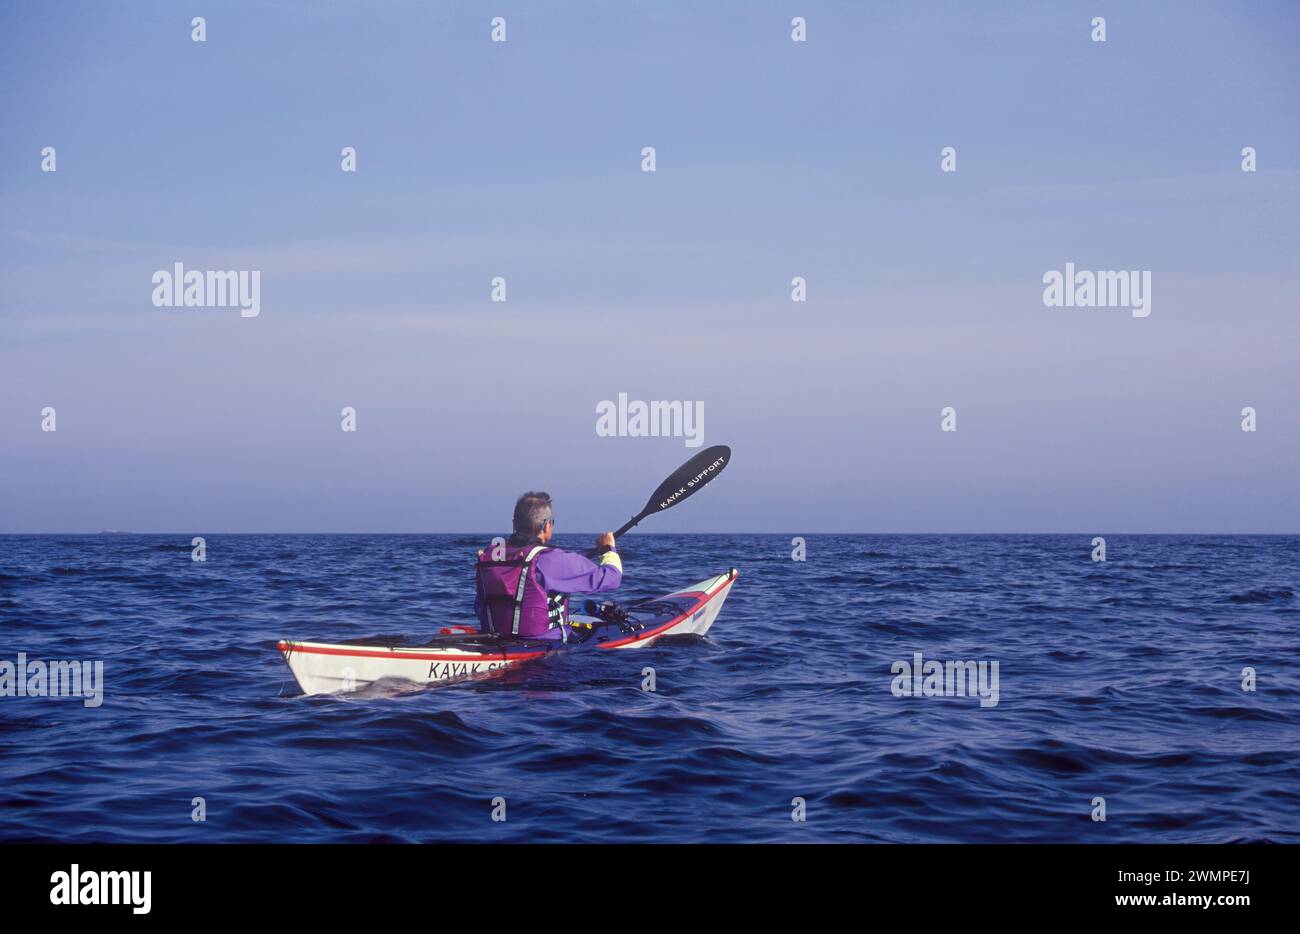 Kayaking on open sea Stock Photo